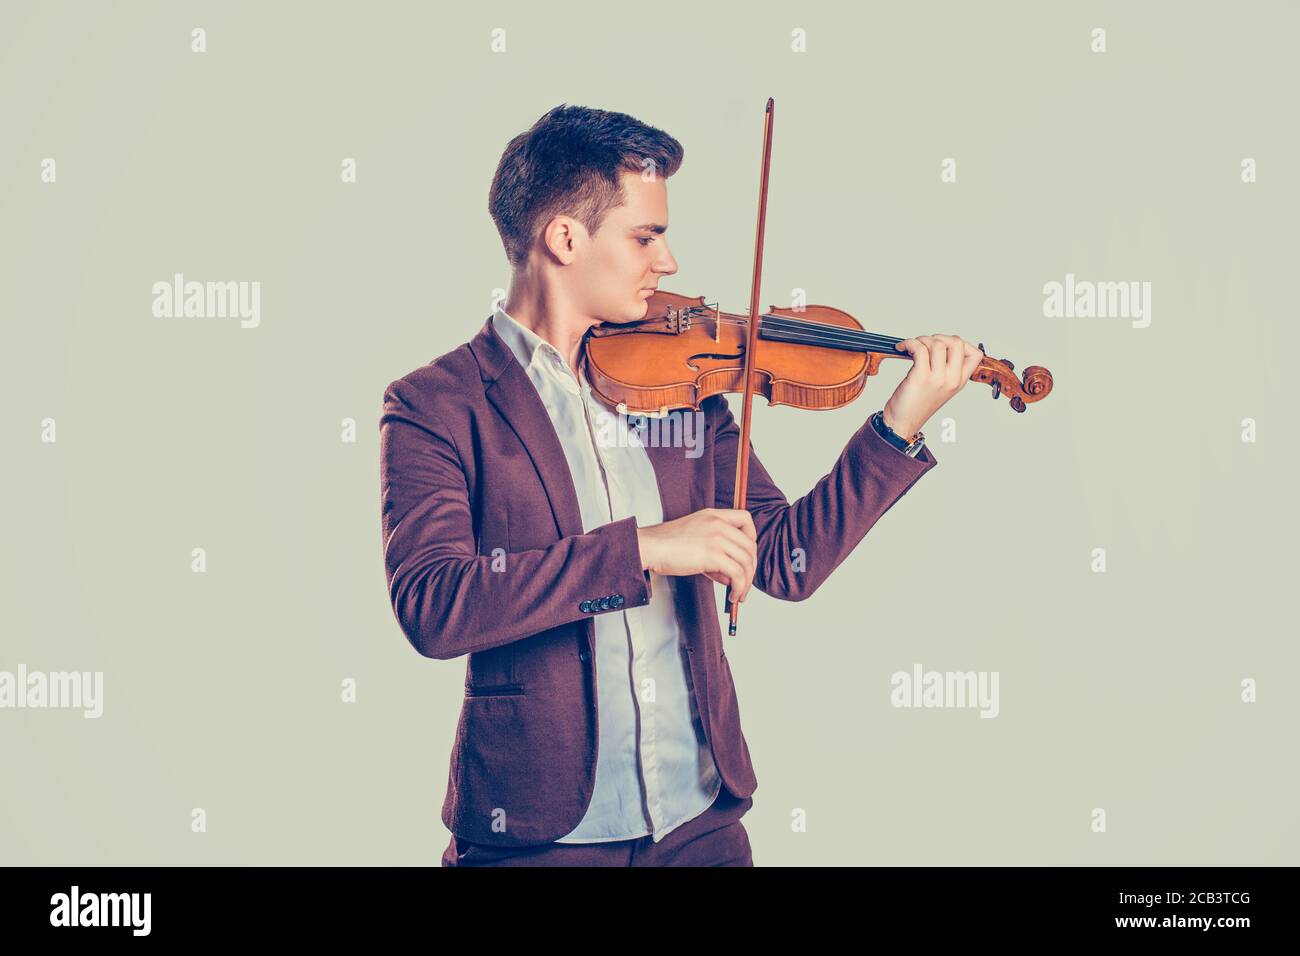 Passione musicale, concetto hobby. Giovane uomo vestito moderno ed elegante giocando su violino in legno in uno studio isolato su uno sfondo verde chiaro. H Foto Stock